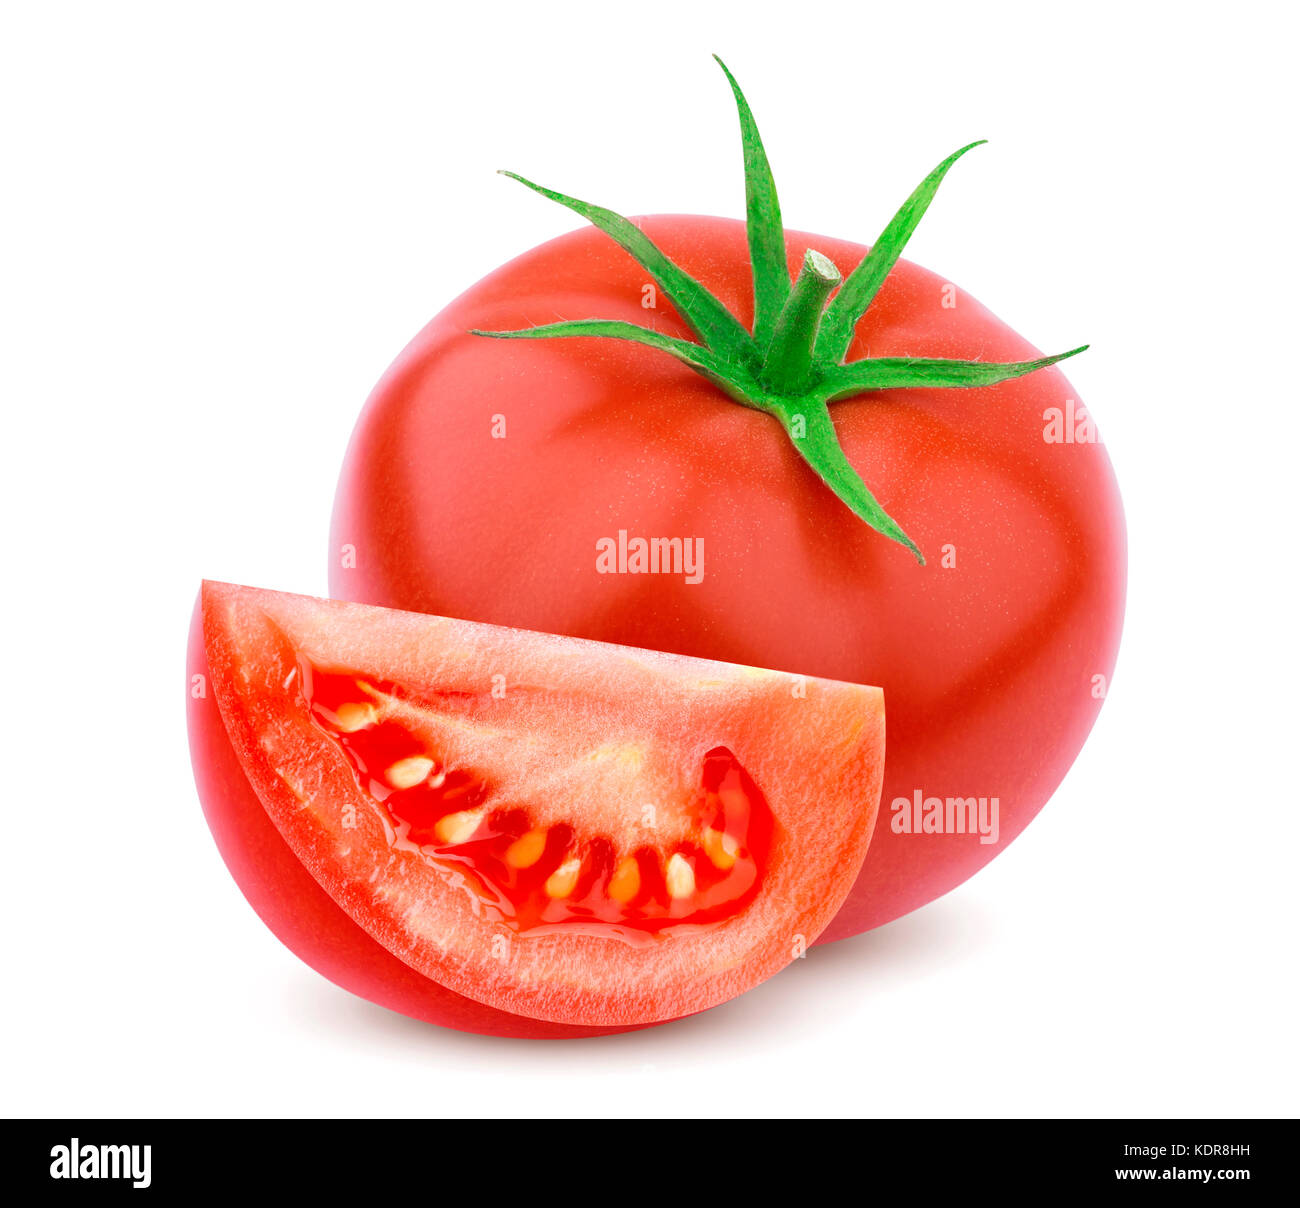 Single tomato isolated on white background Stock Photo